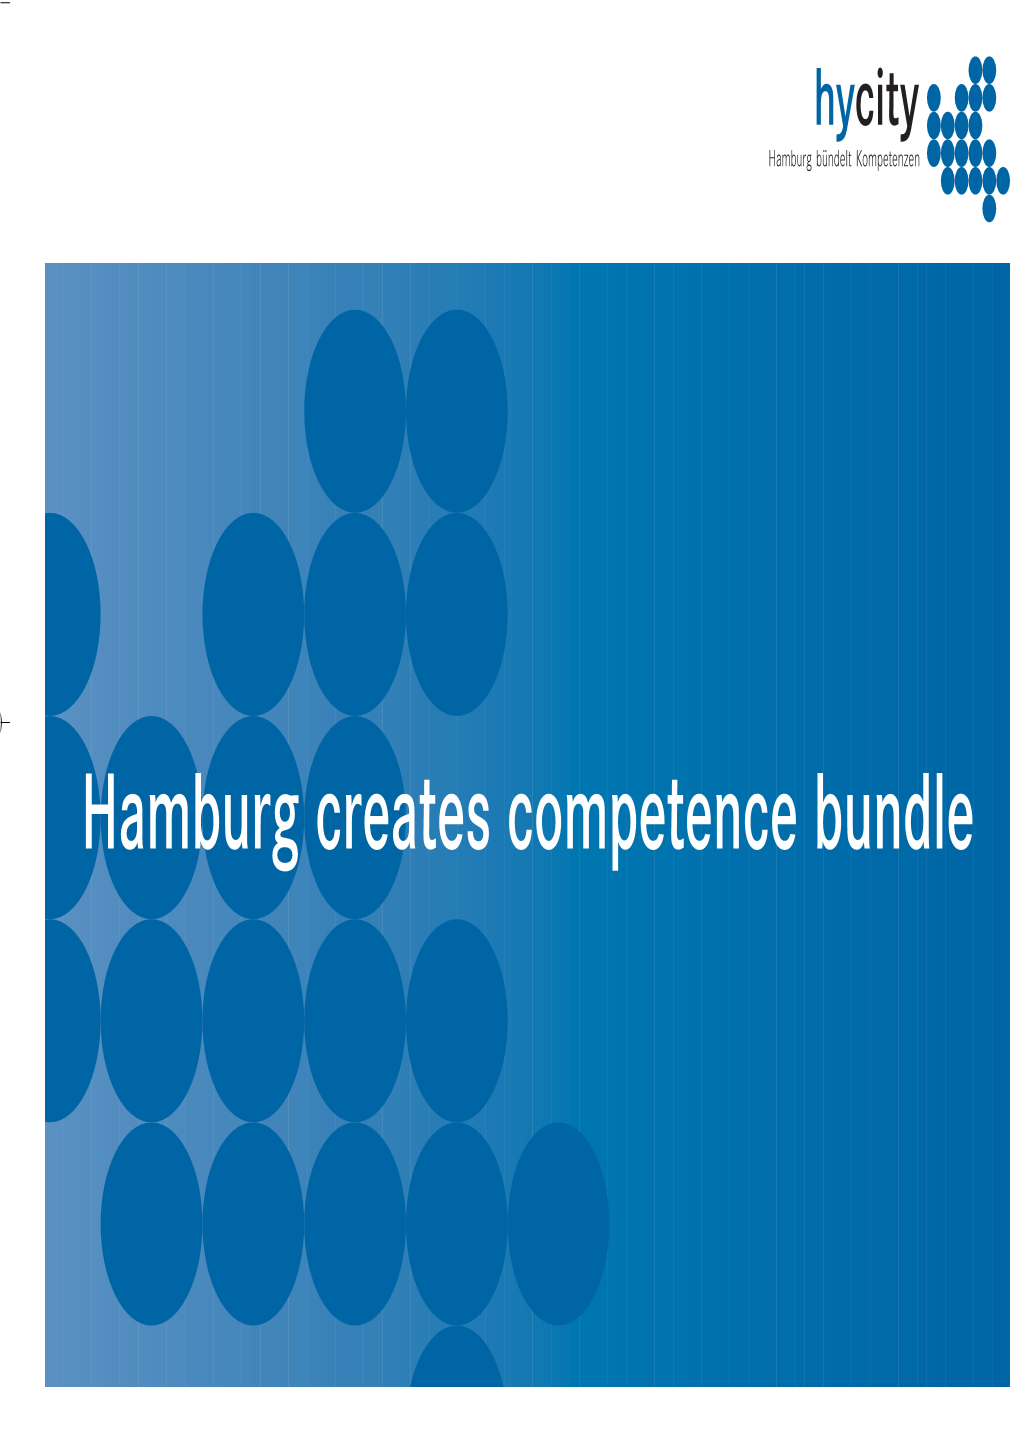 Hamburg Creates Competence Bundle Set.Englisch.RZ ES.Qxd 29.04.2007 12:44 Uhr Seite 2 Set.Englisch.RZ ES.Qxd 29.04.2007 12:44 Uhr Seite 3